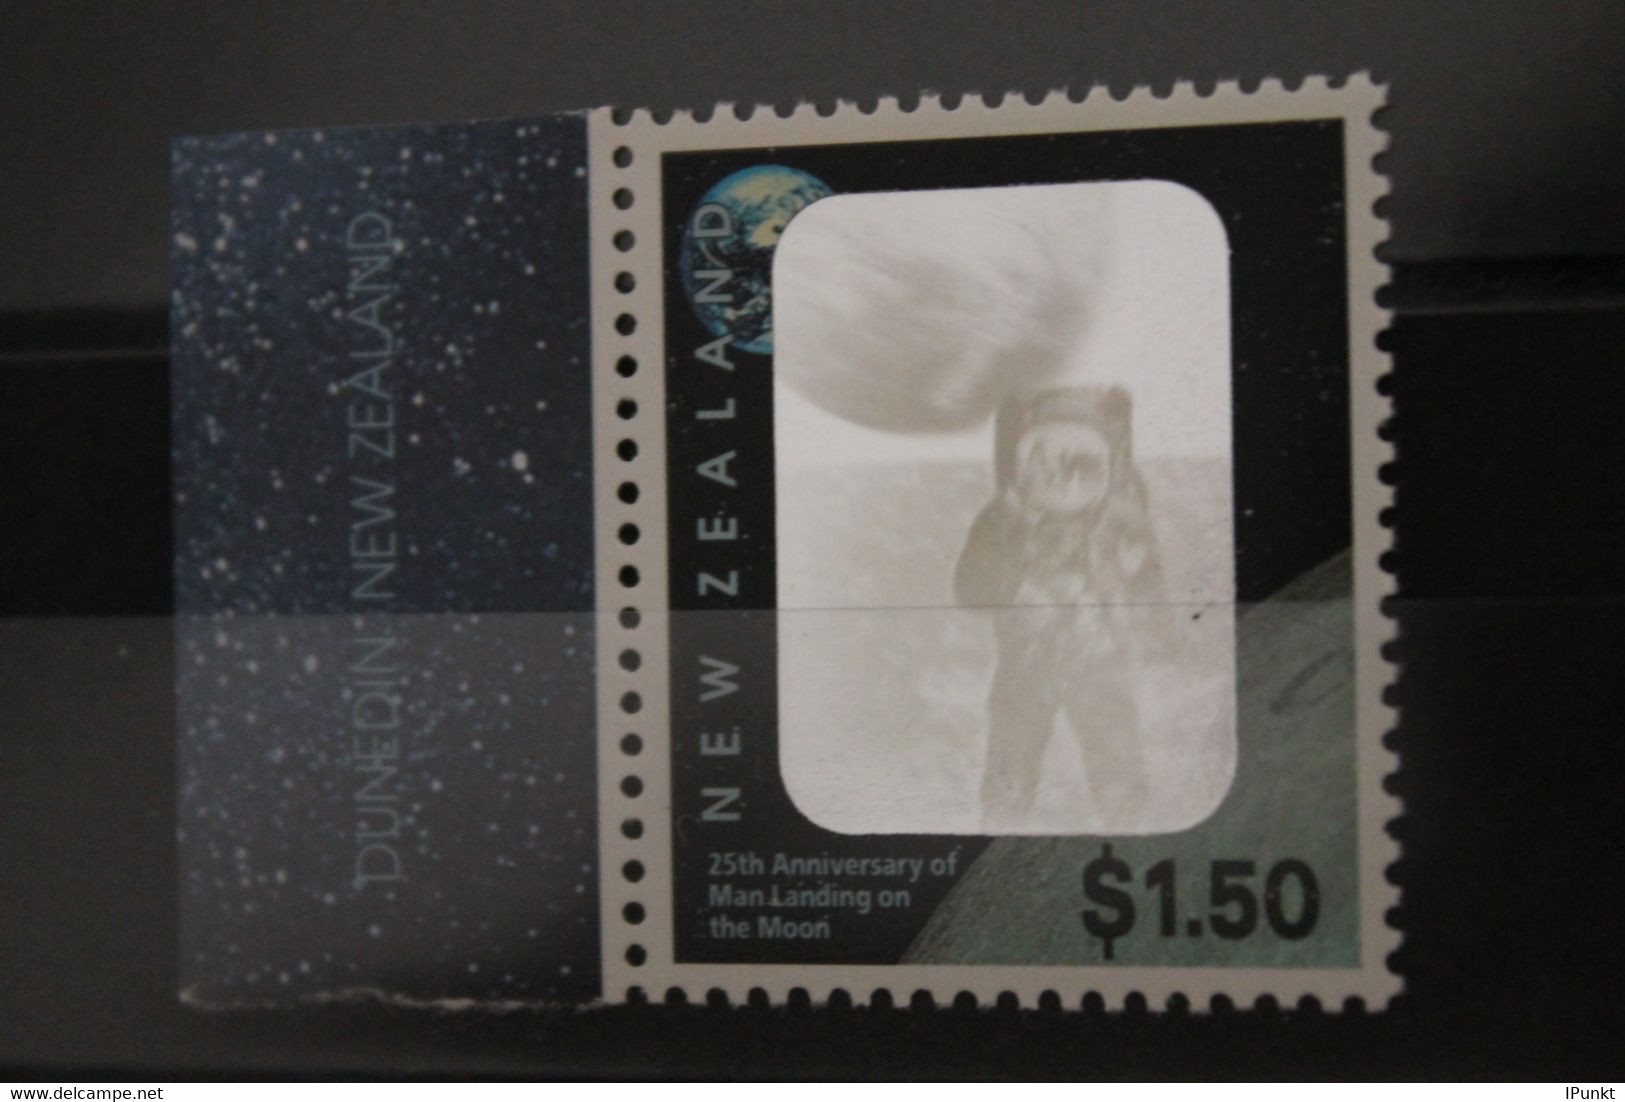 Hologramm Mondlandung; New Zealand 1994; MNH - Hologramme